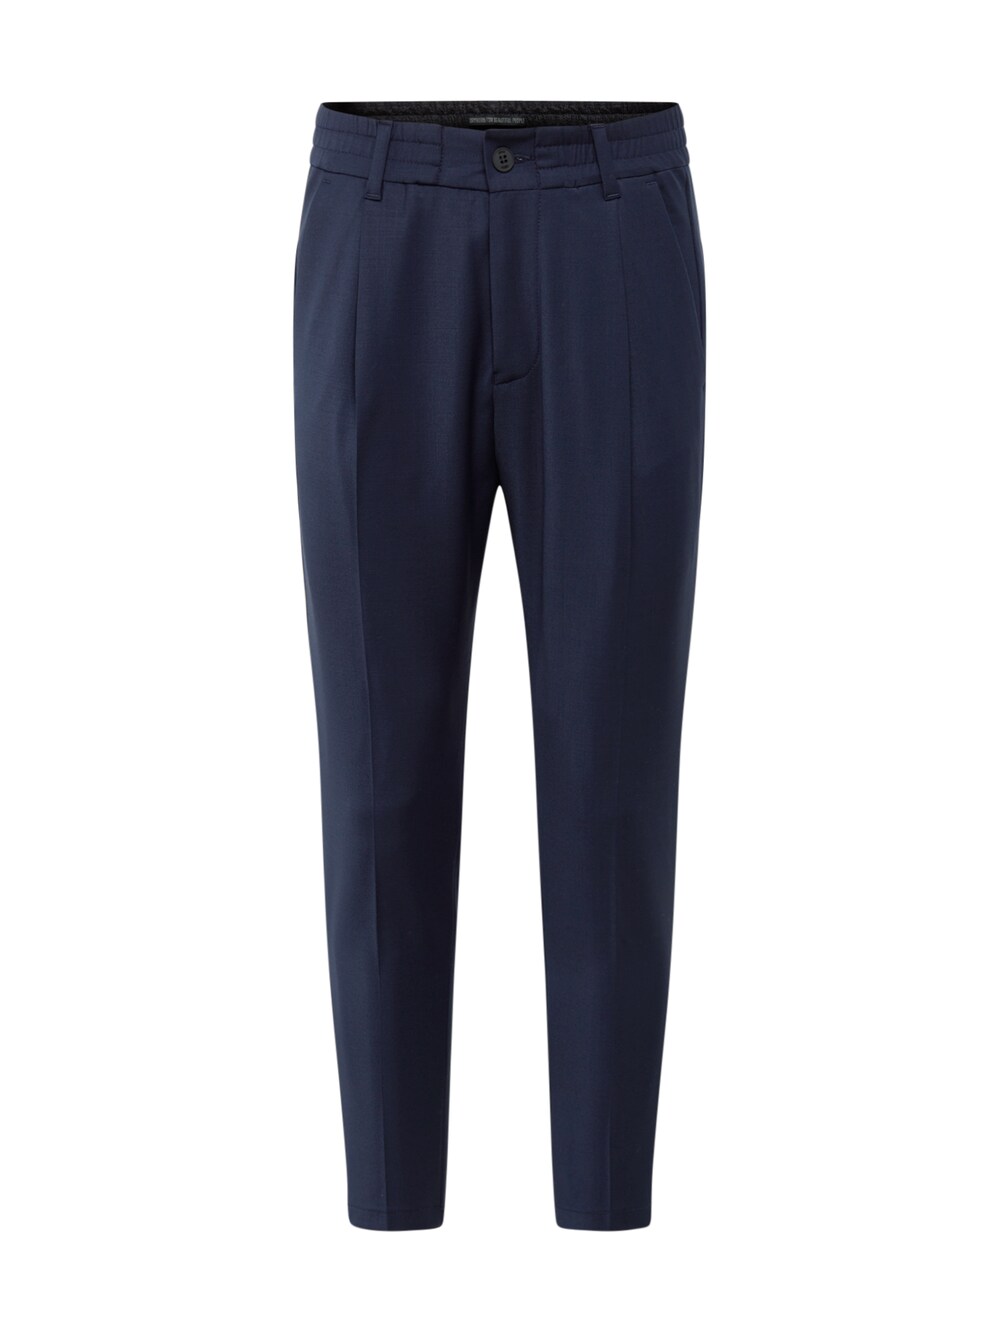 Обычные плиссированные брюки Drykorn Chasy, темно-синий брюки chasy drykorn цвет grey